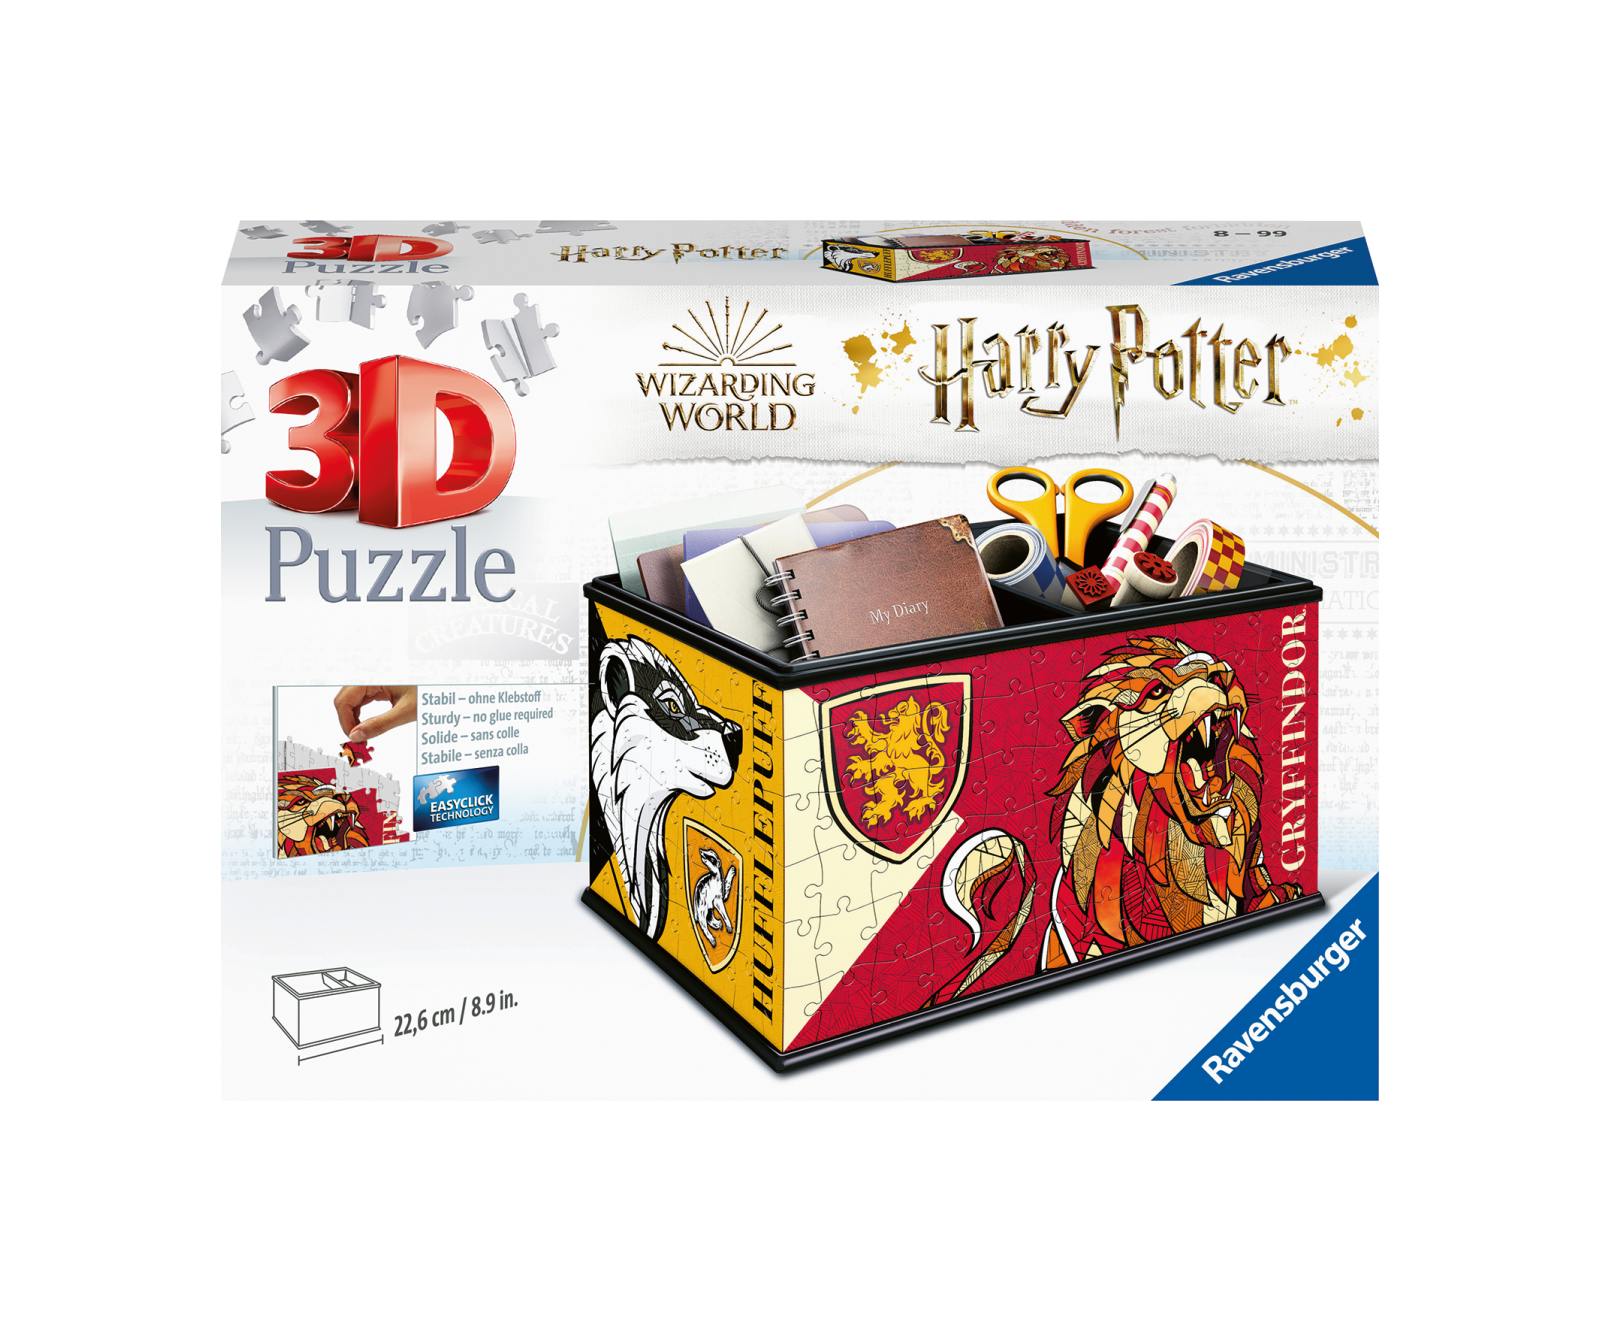 BrainBox Harry Potter - Mastro Geppetto, giochi e giocattoli creativi